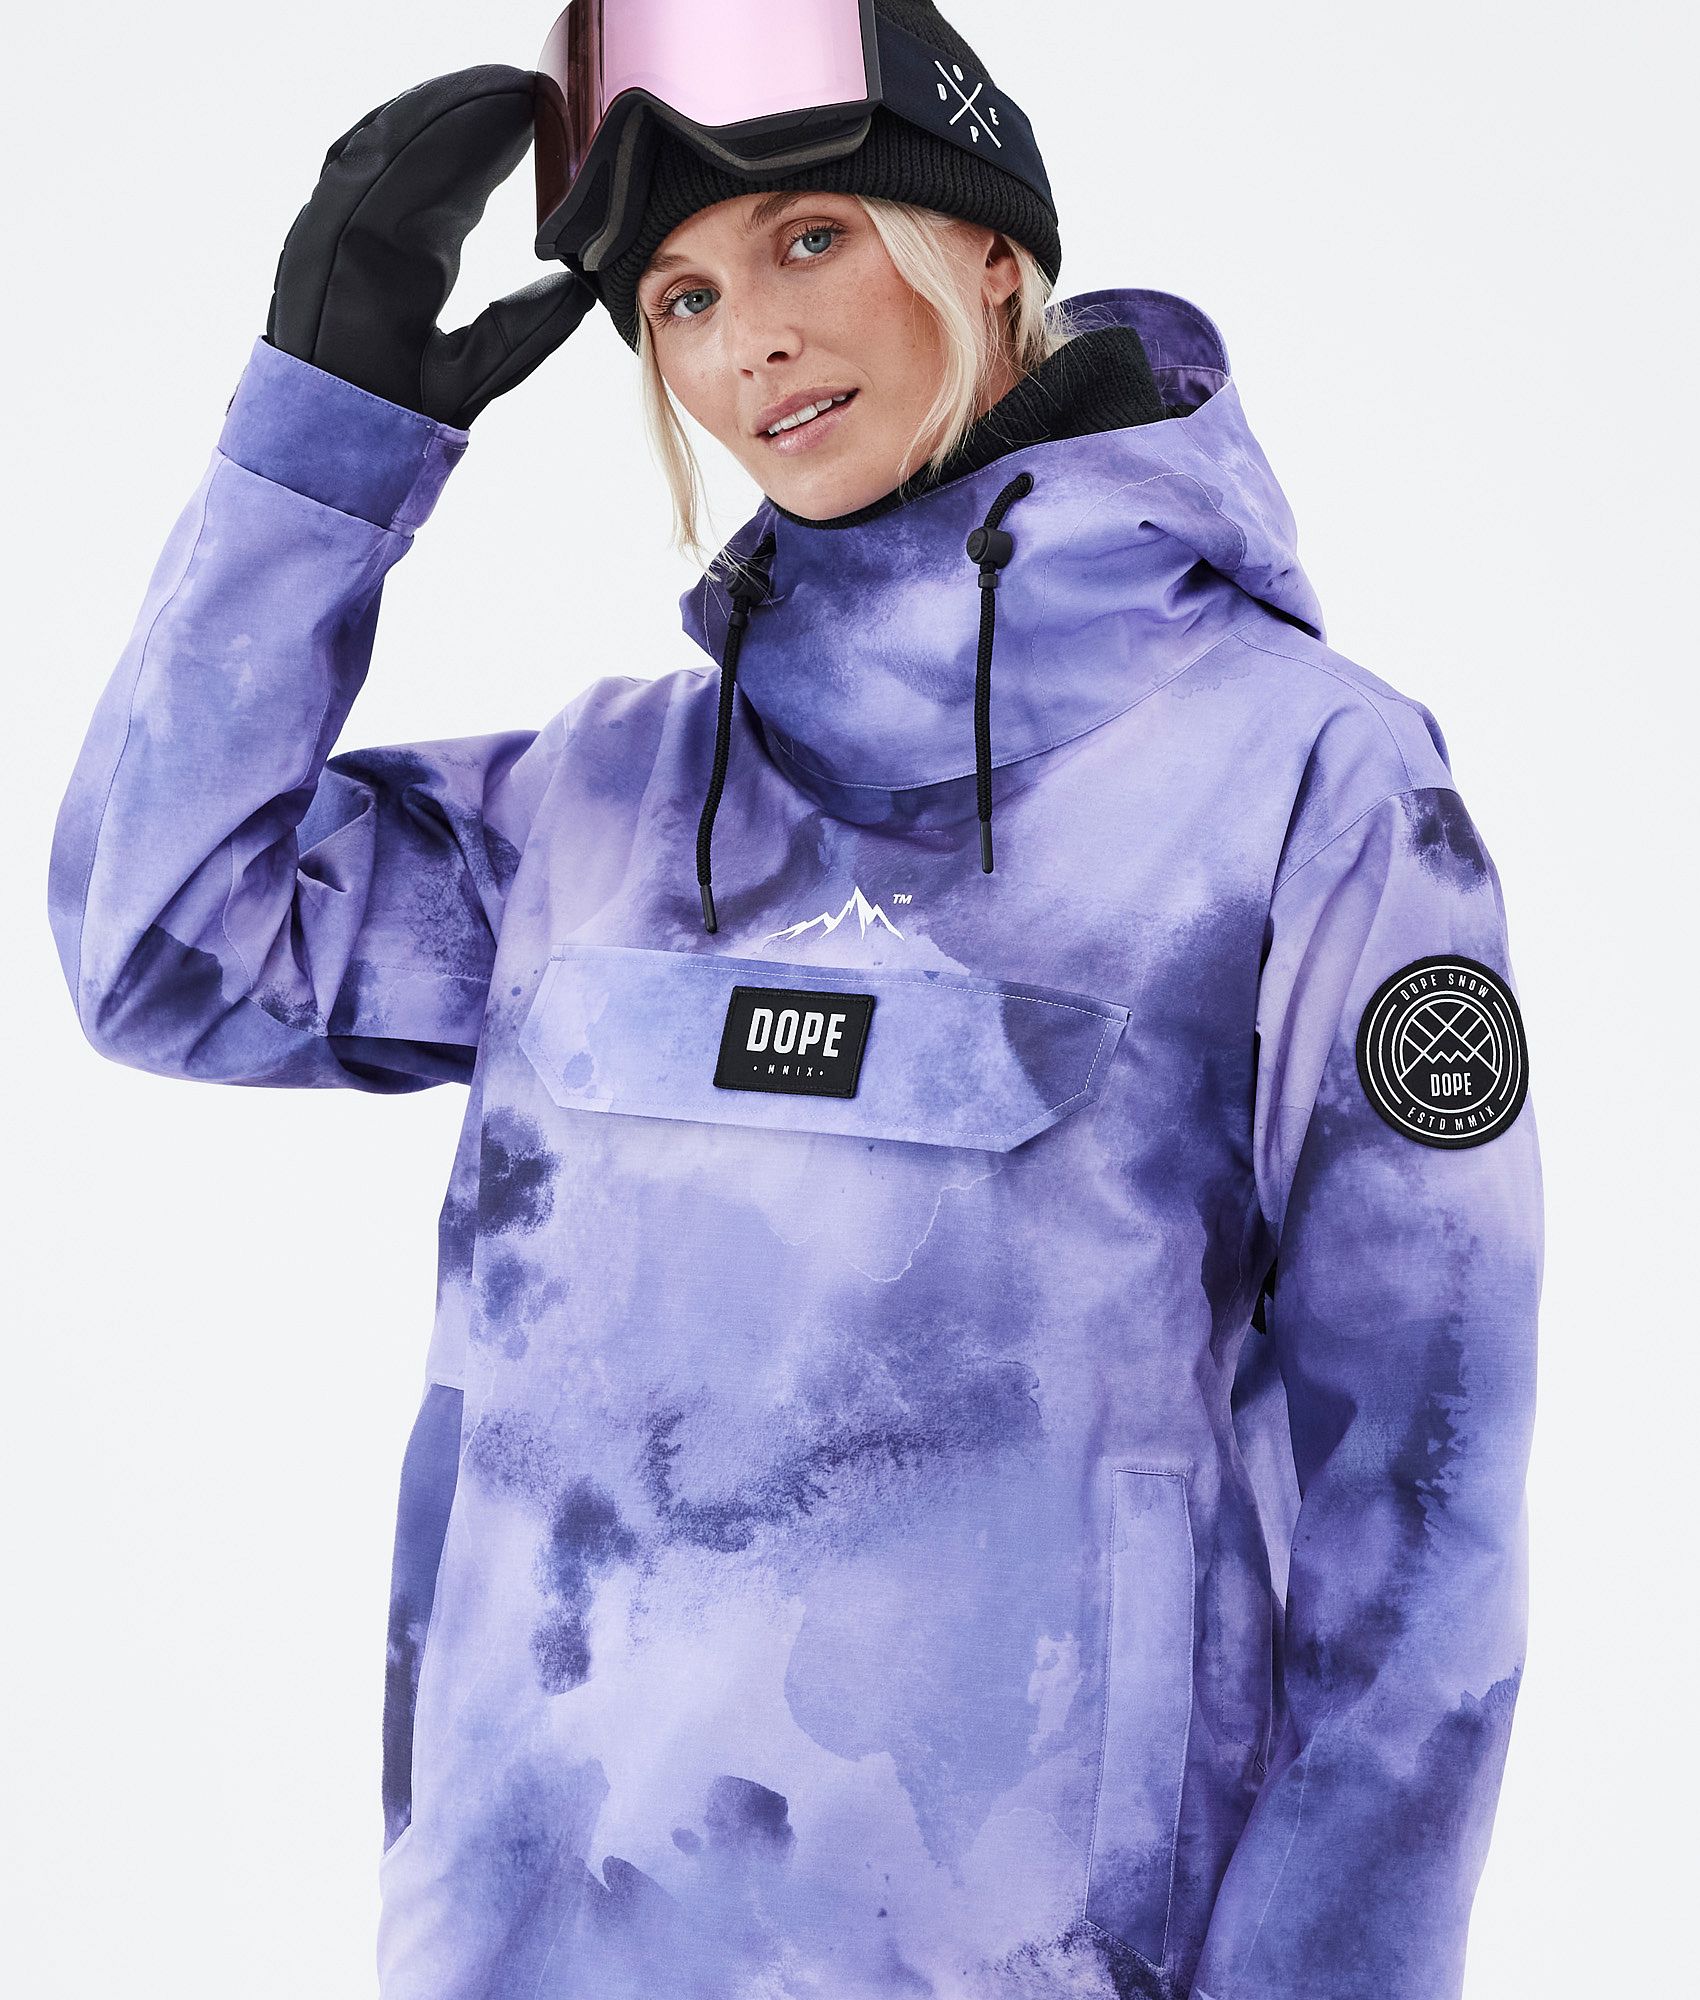 Dope Blizzard W 2022 Women's Snowboard Jacket Liquid Violet